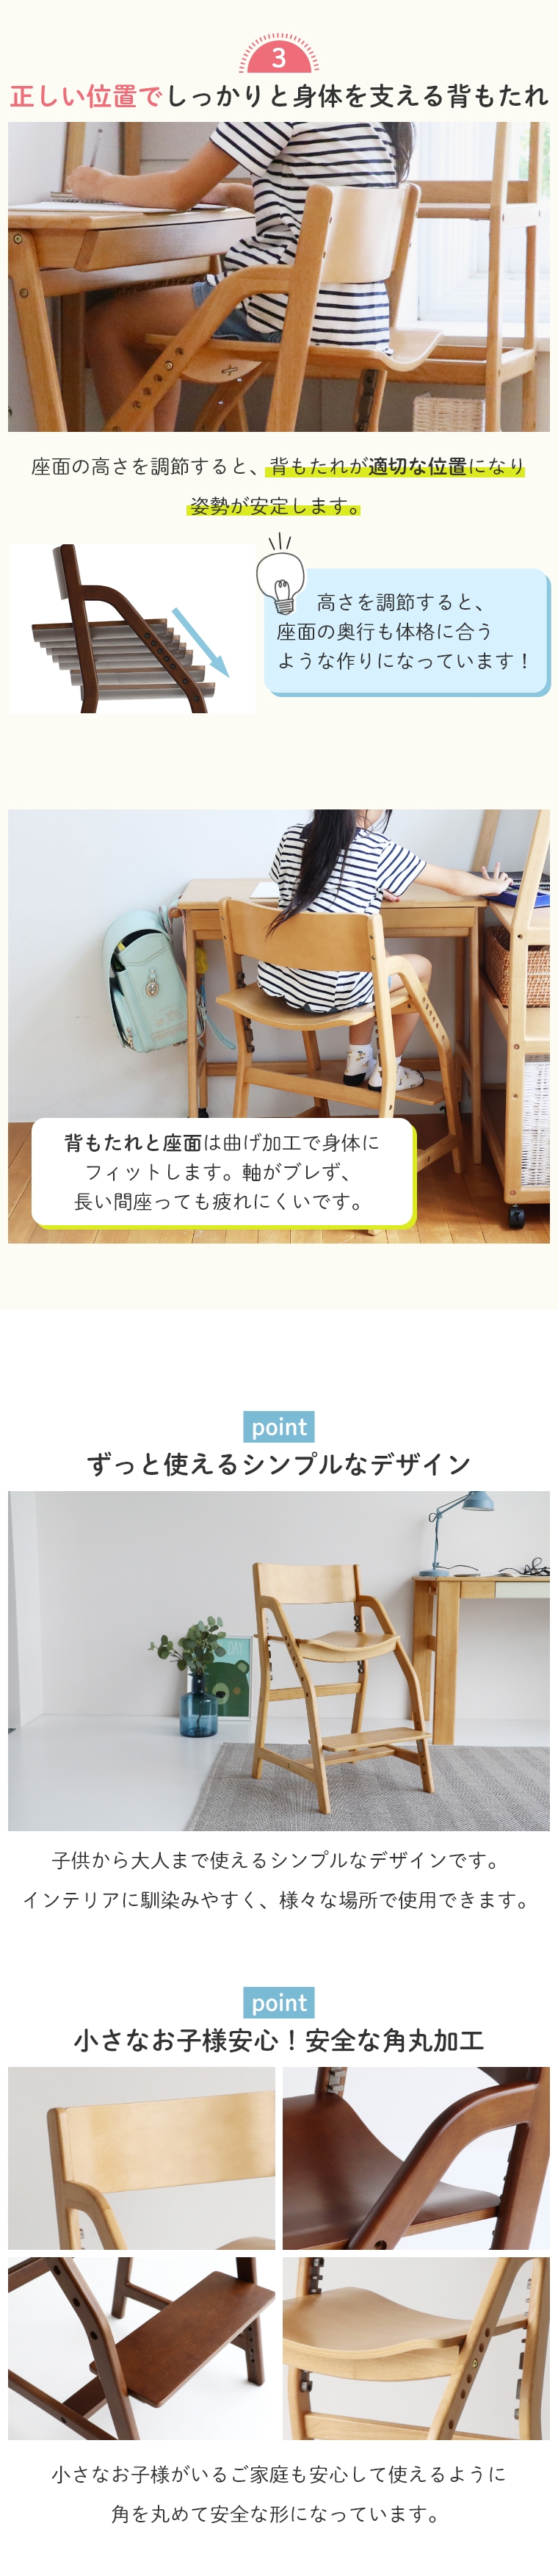 学習イス 姿勢 軽量 E-toko キッズチェア エコノミー 学習椅子 学習チェア 木製チェア 高さ調節 高さ足置き 安全 シンプル リビング ダイニング 木製 JUC-3661